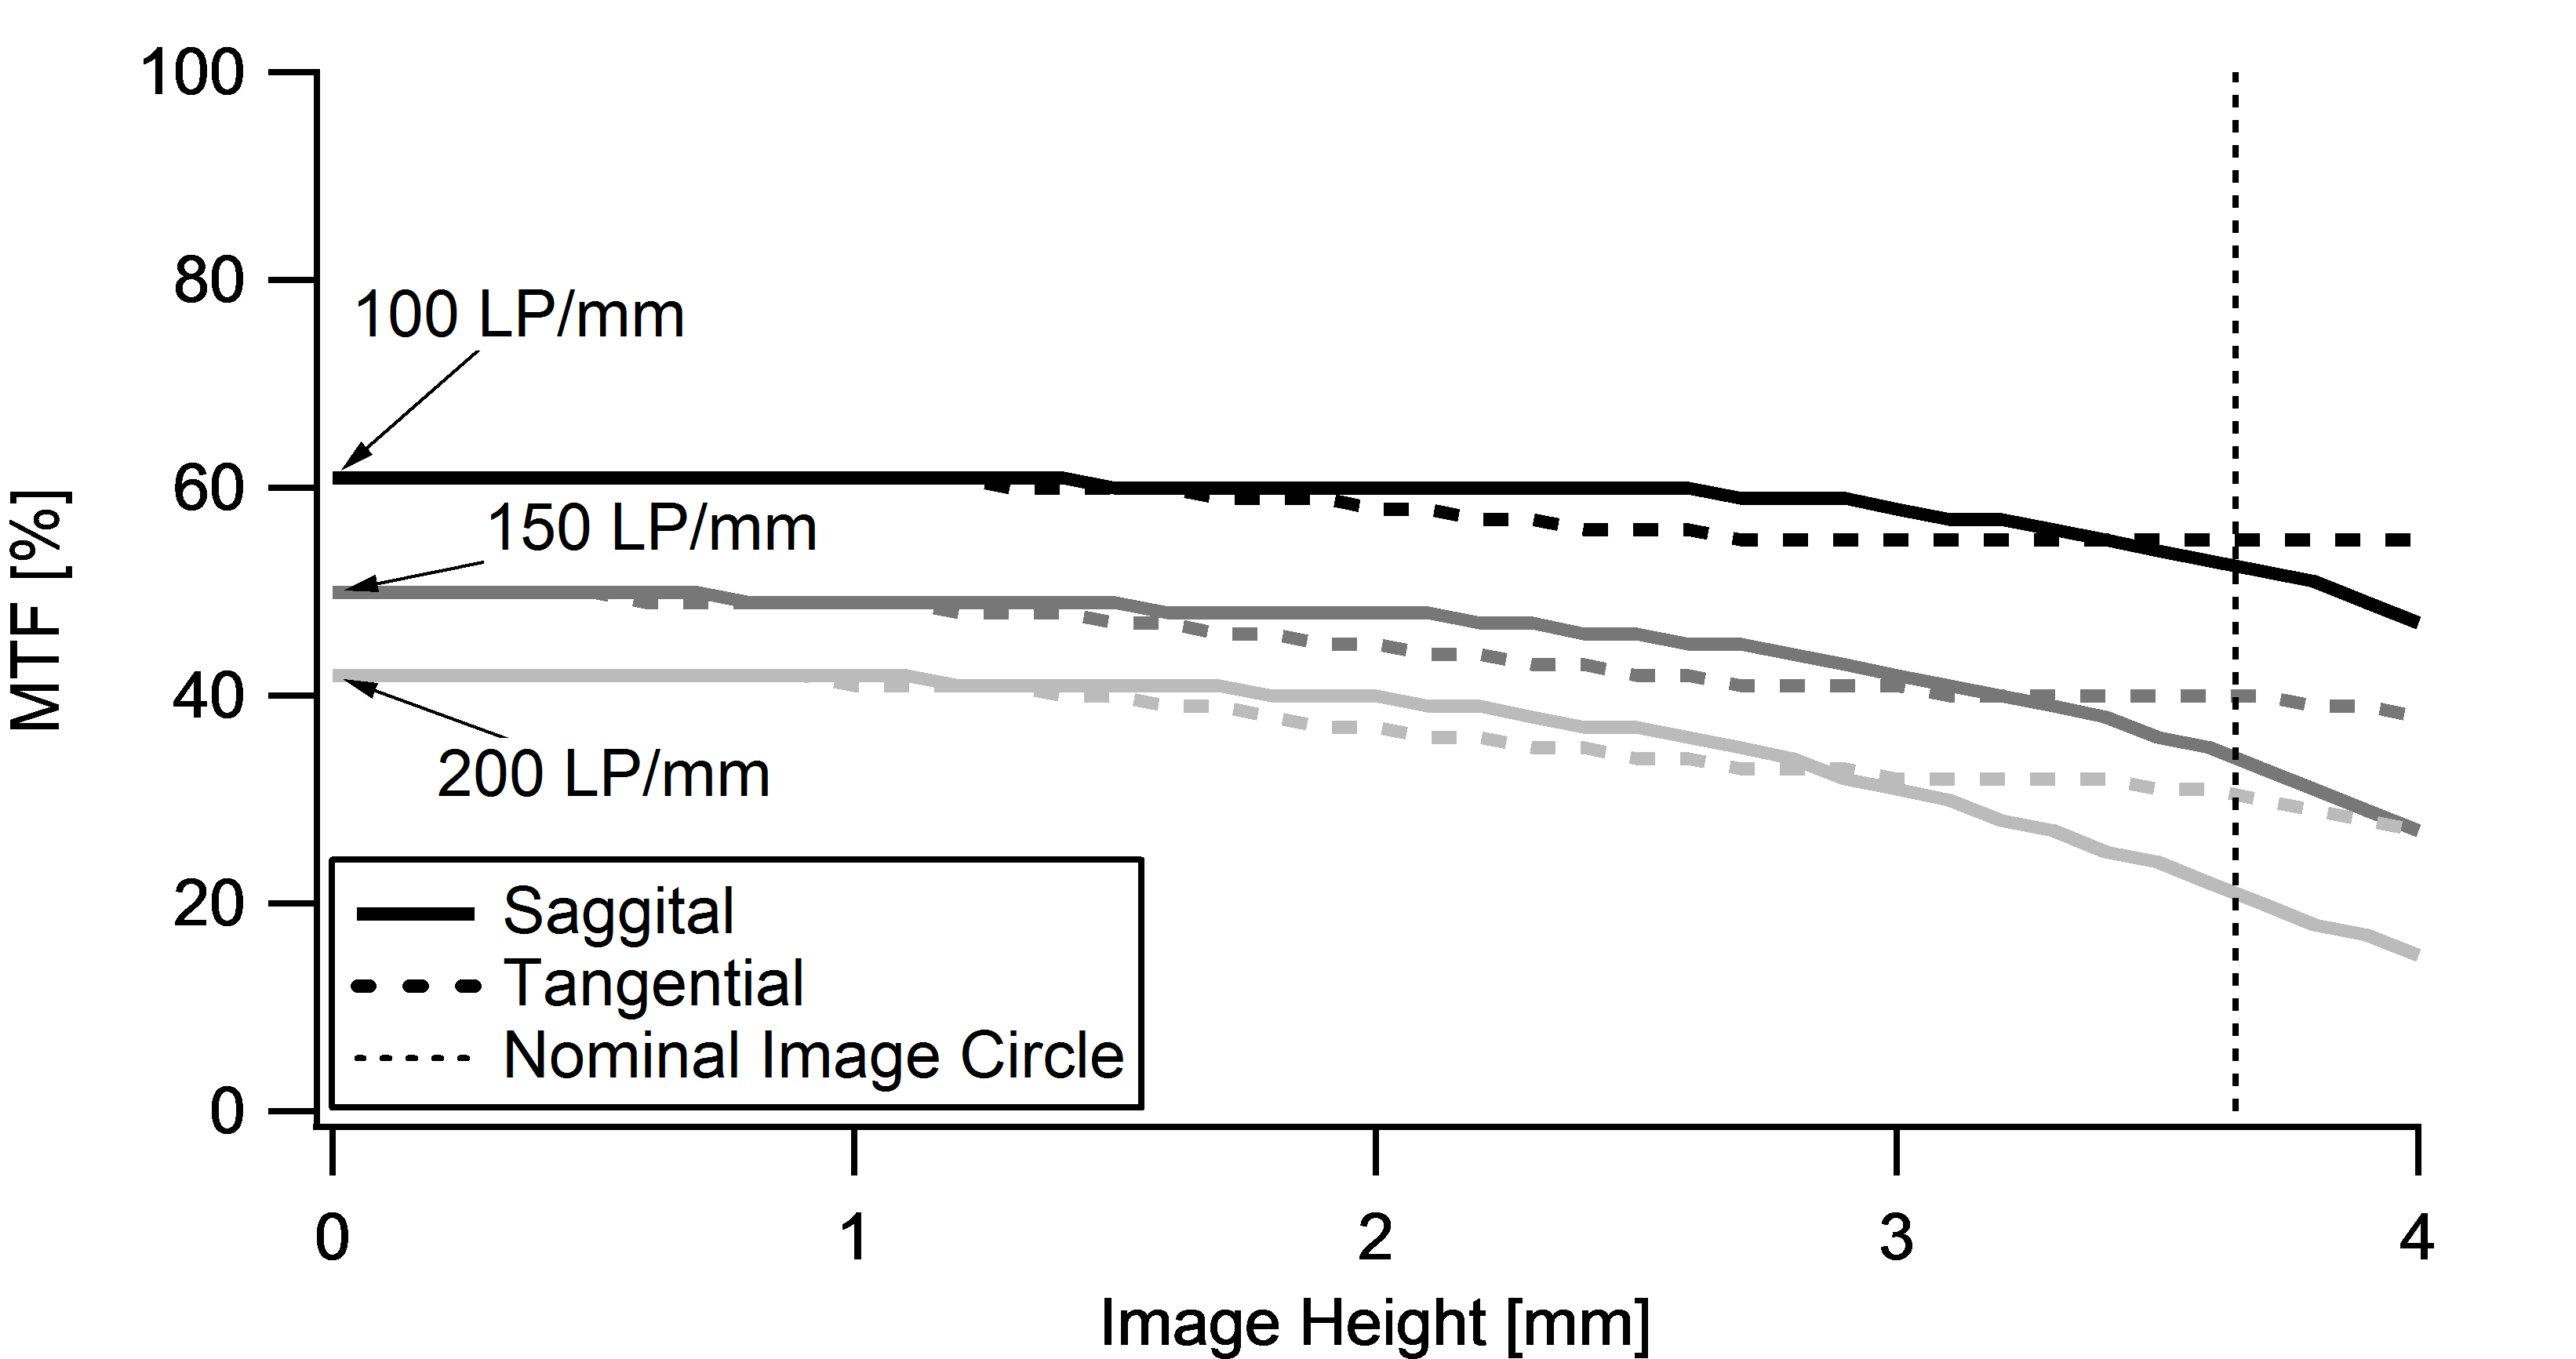 Resolution versus Image Height